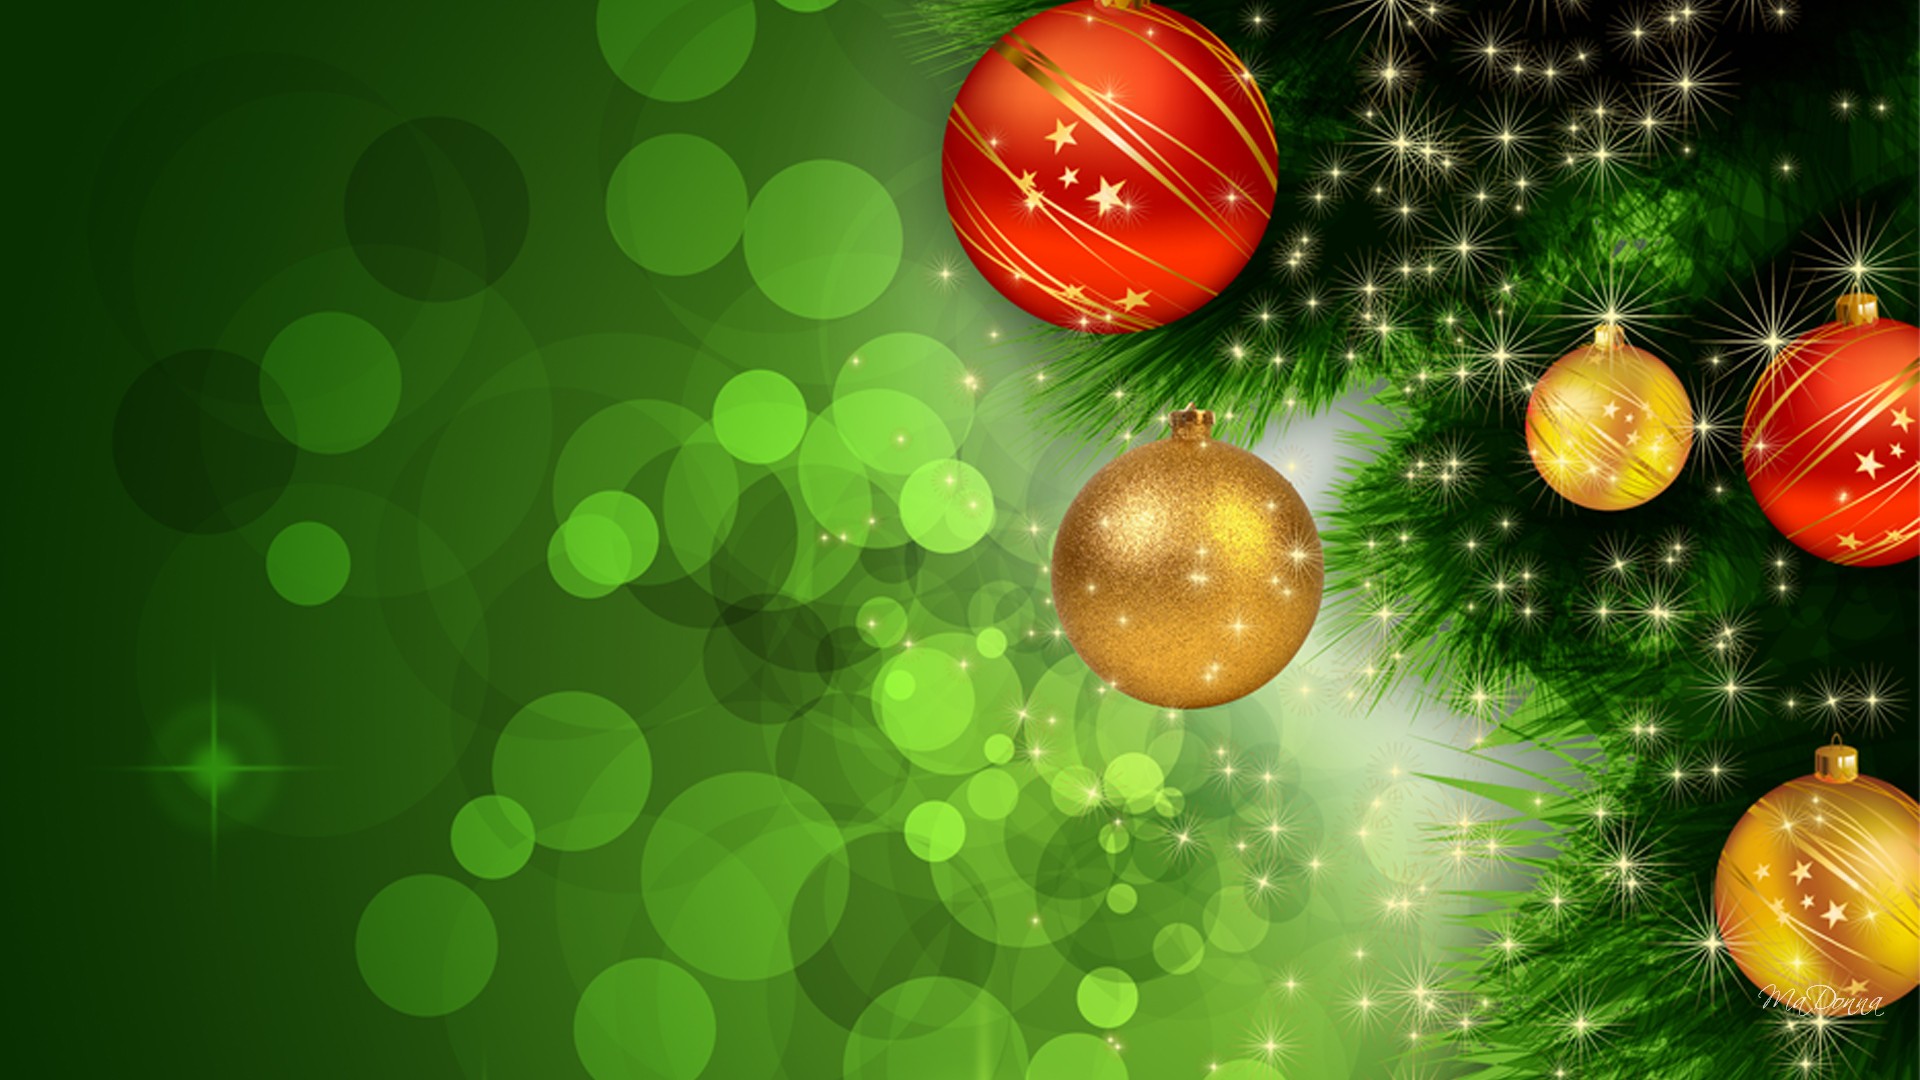 grüne weihnachtstapete,grün,weihnachtsschmuck,weihnachten,baum,weihnachtsbaum